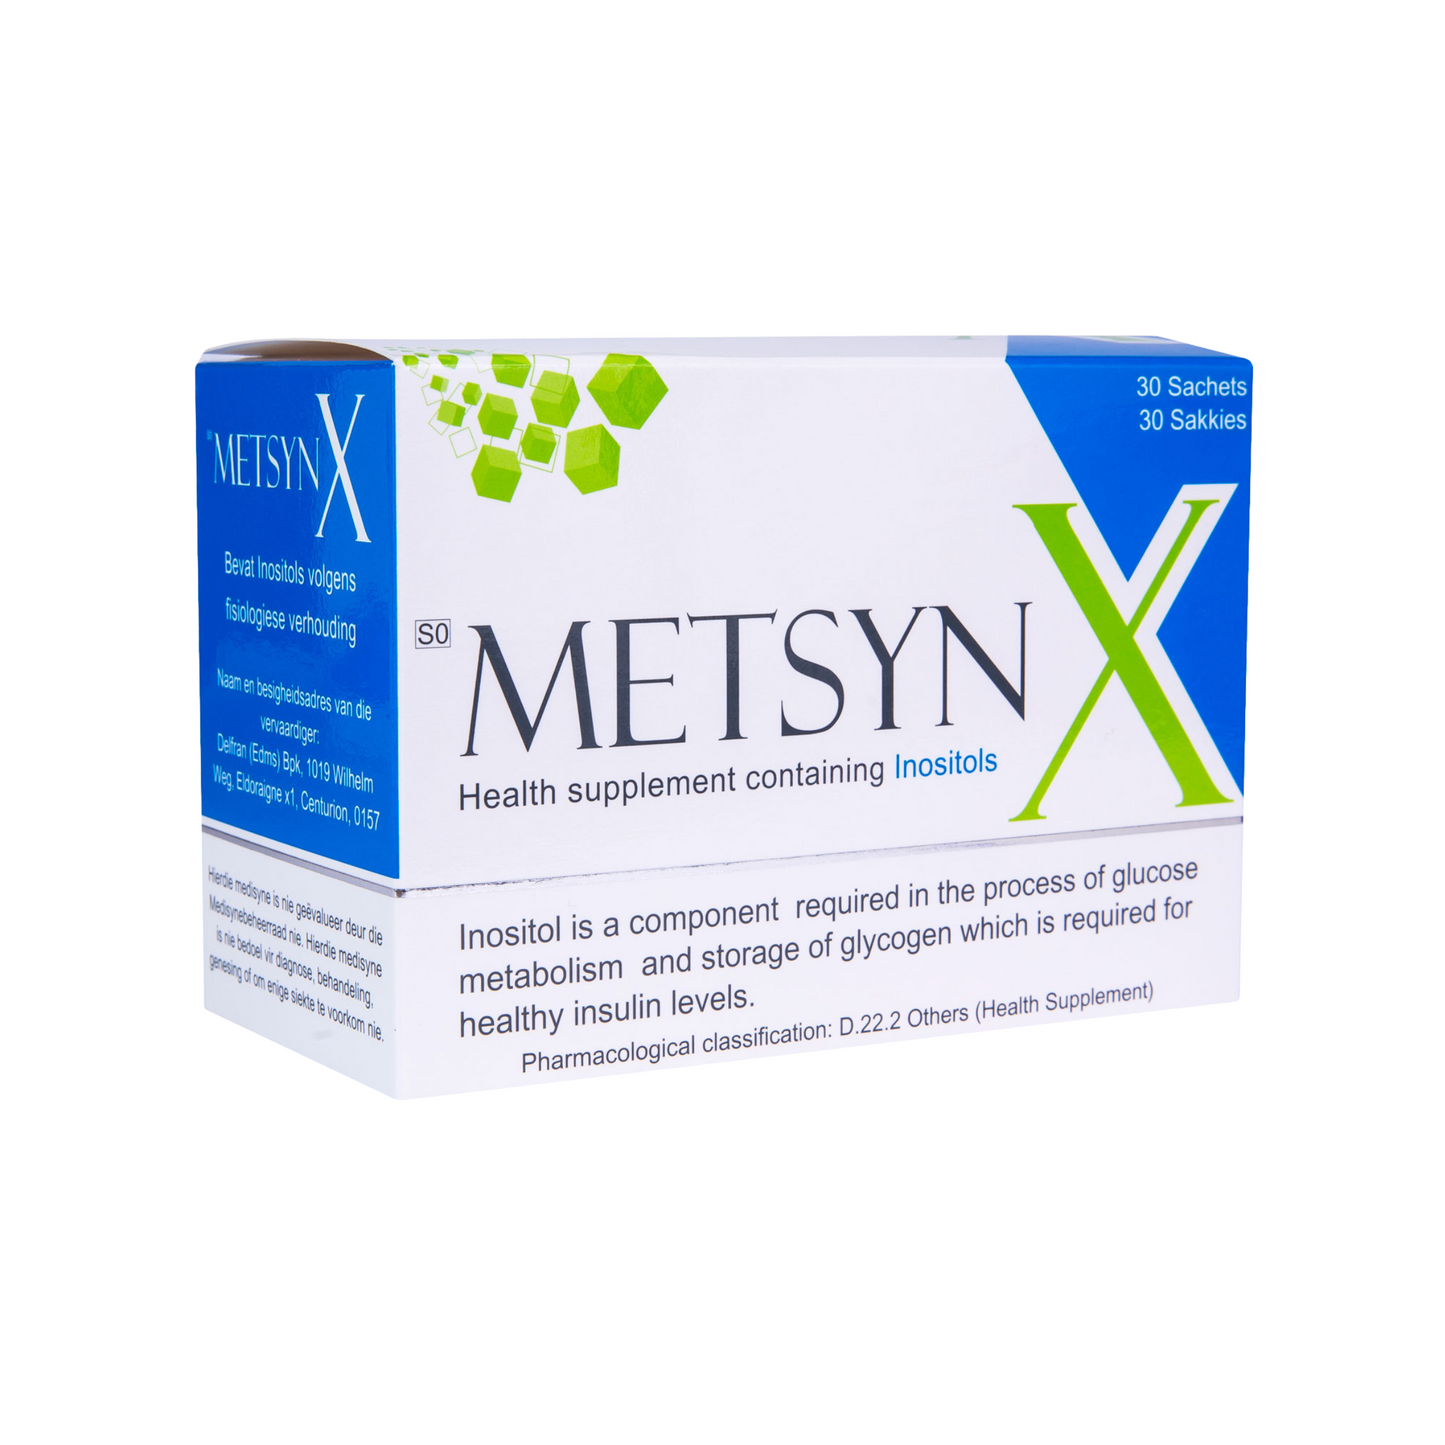 METSYN X